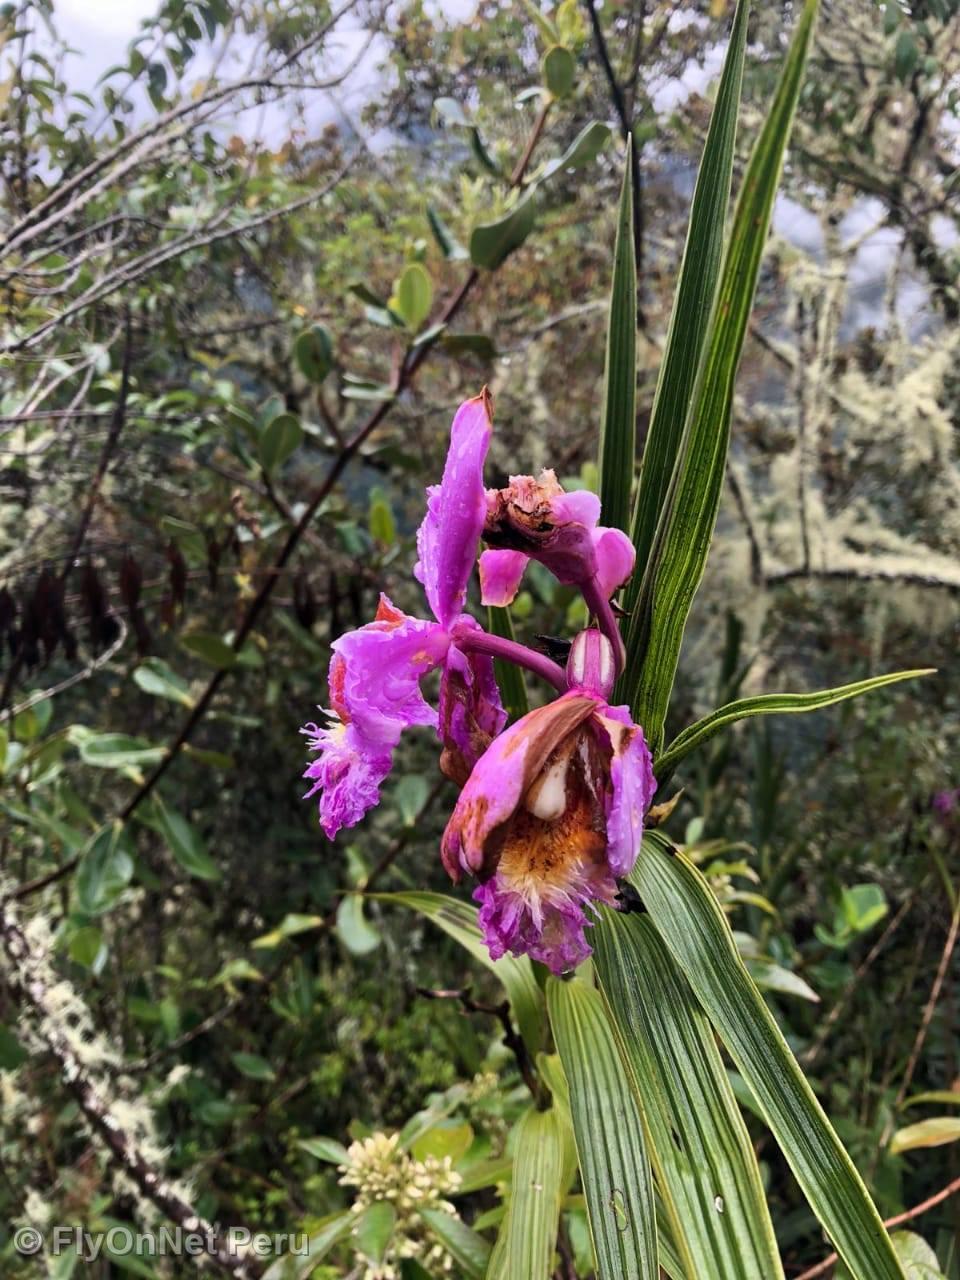 Álbum de fotos: Orquídea, Camino Inca